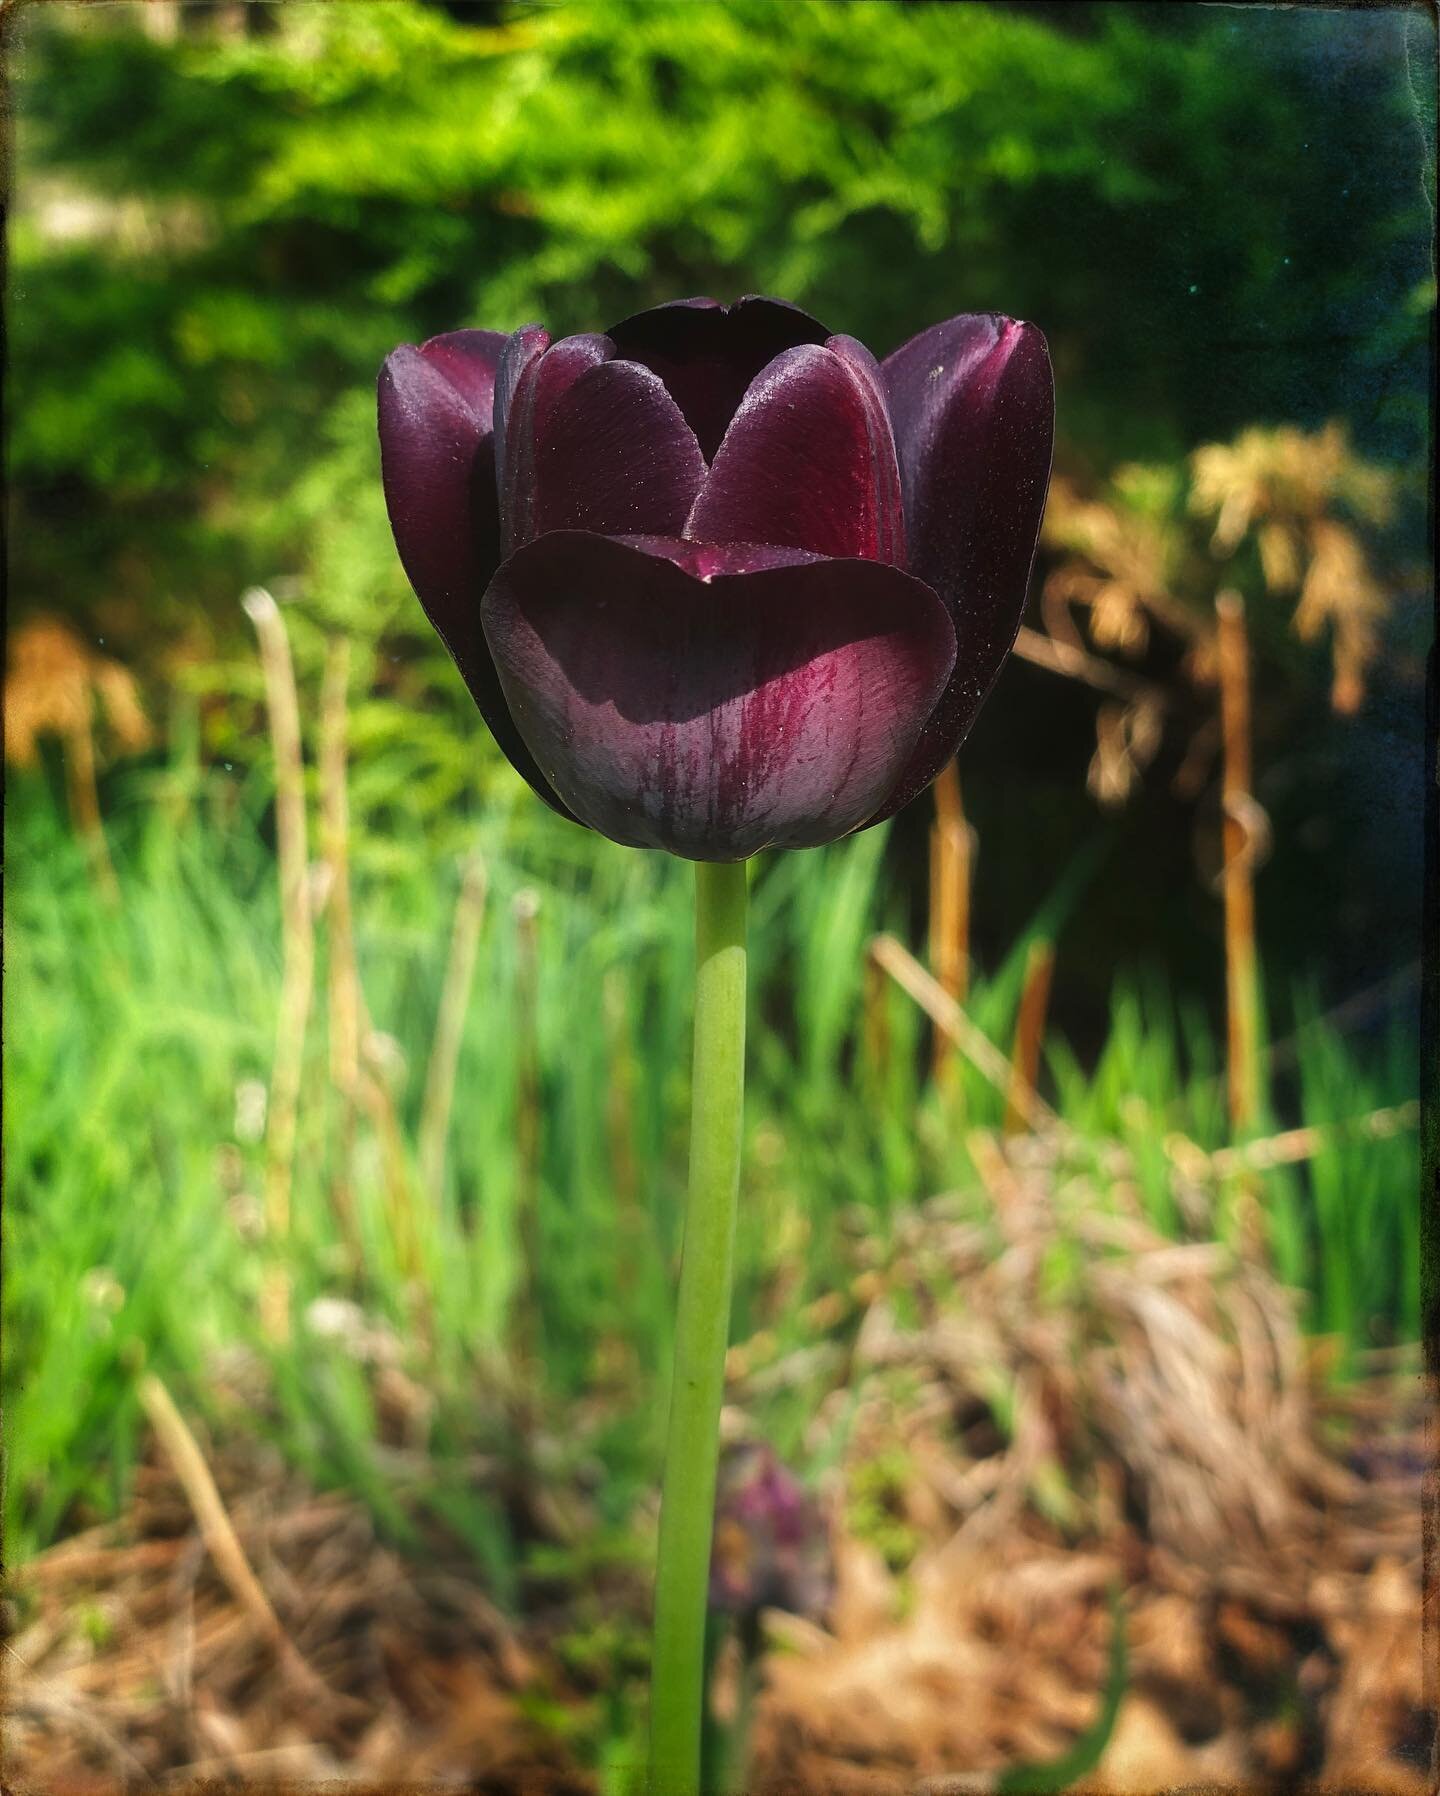 Queen of the night Tulip 

#allthefeels #speakingmylanguage #queenofthenight #tulip #signs